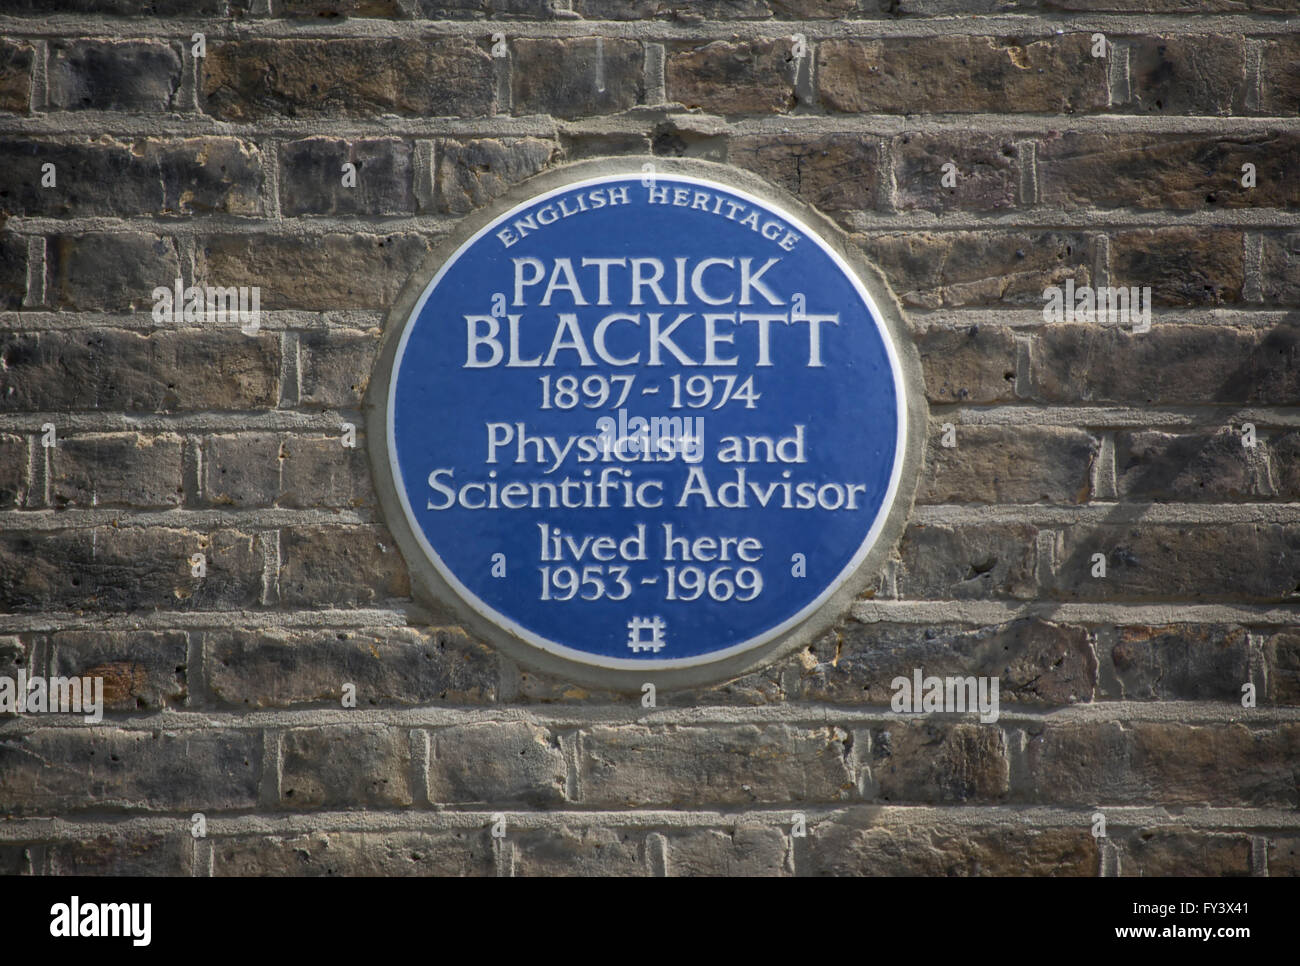 English Heritage blue plaque marquant un accueil de physicien et conseiller scientifique Patrick Blackett, Chelsea, Londres, Angleterre Banque D'Images